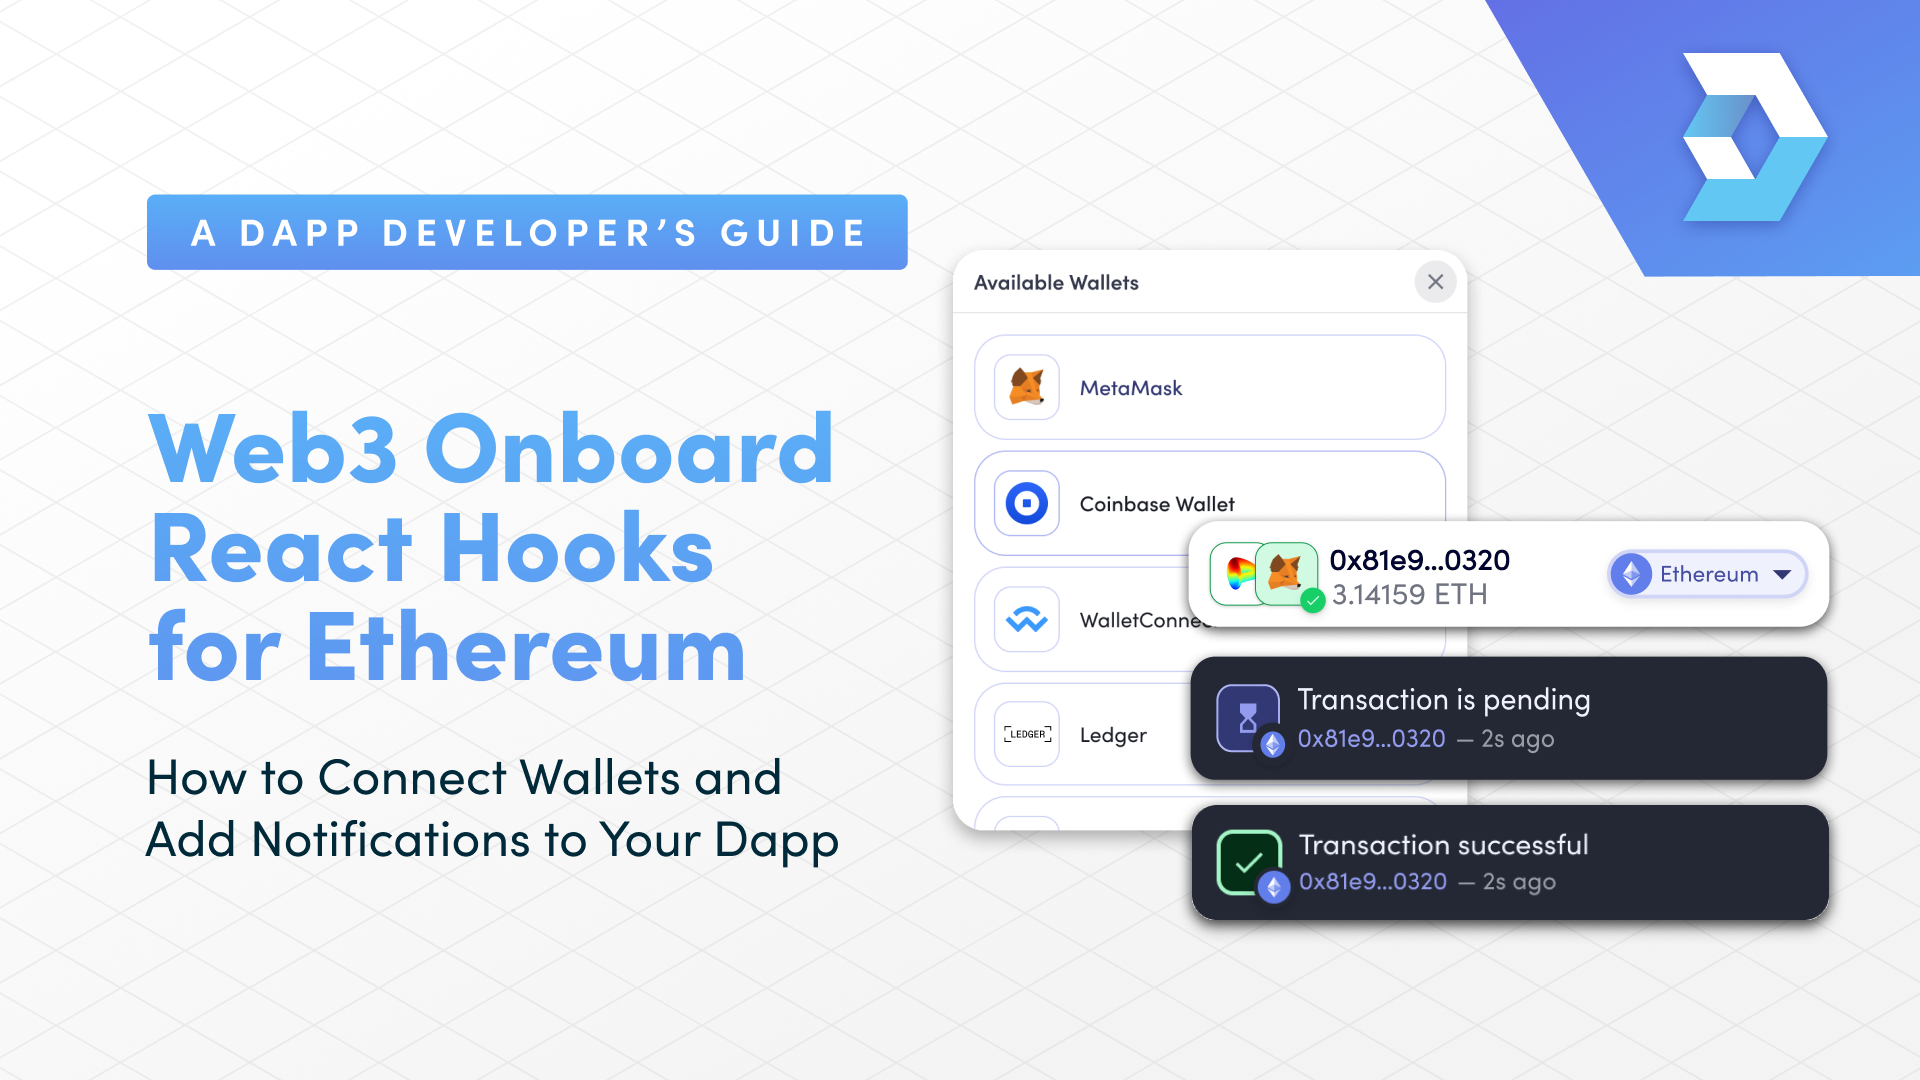 Web3 Dapp Developer Guide: React Hooks for Ethereum